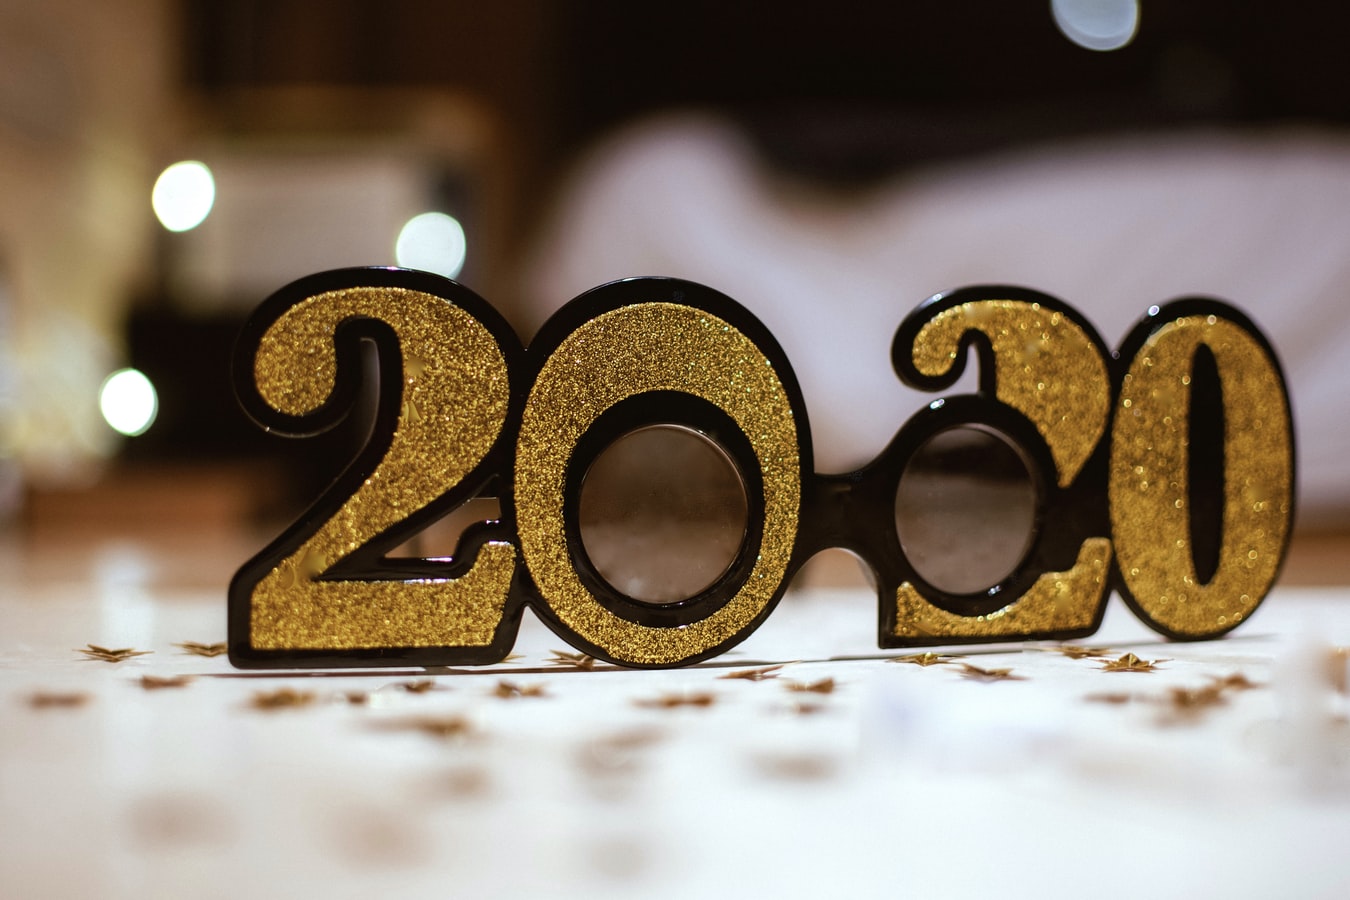 [2020] 경자년 새해에는 소망하는 일 모두 이루세요!